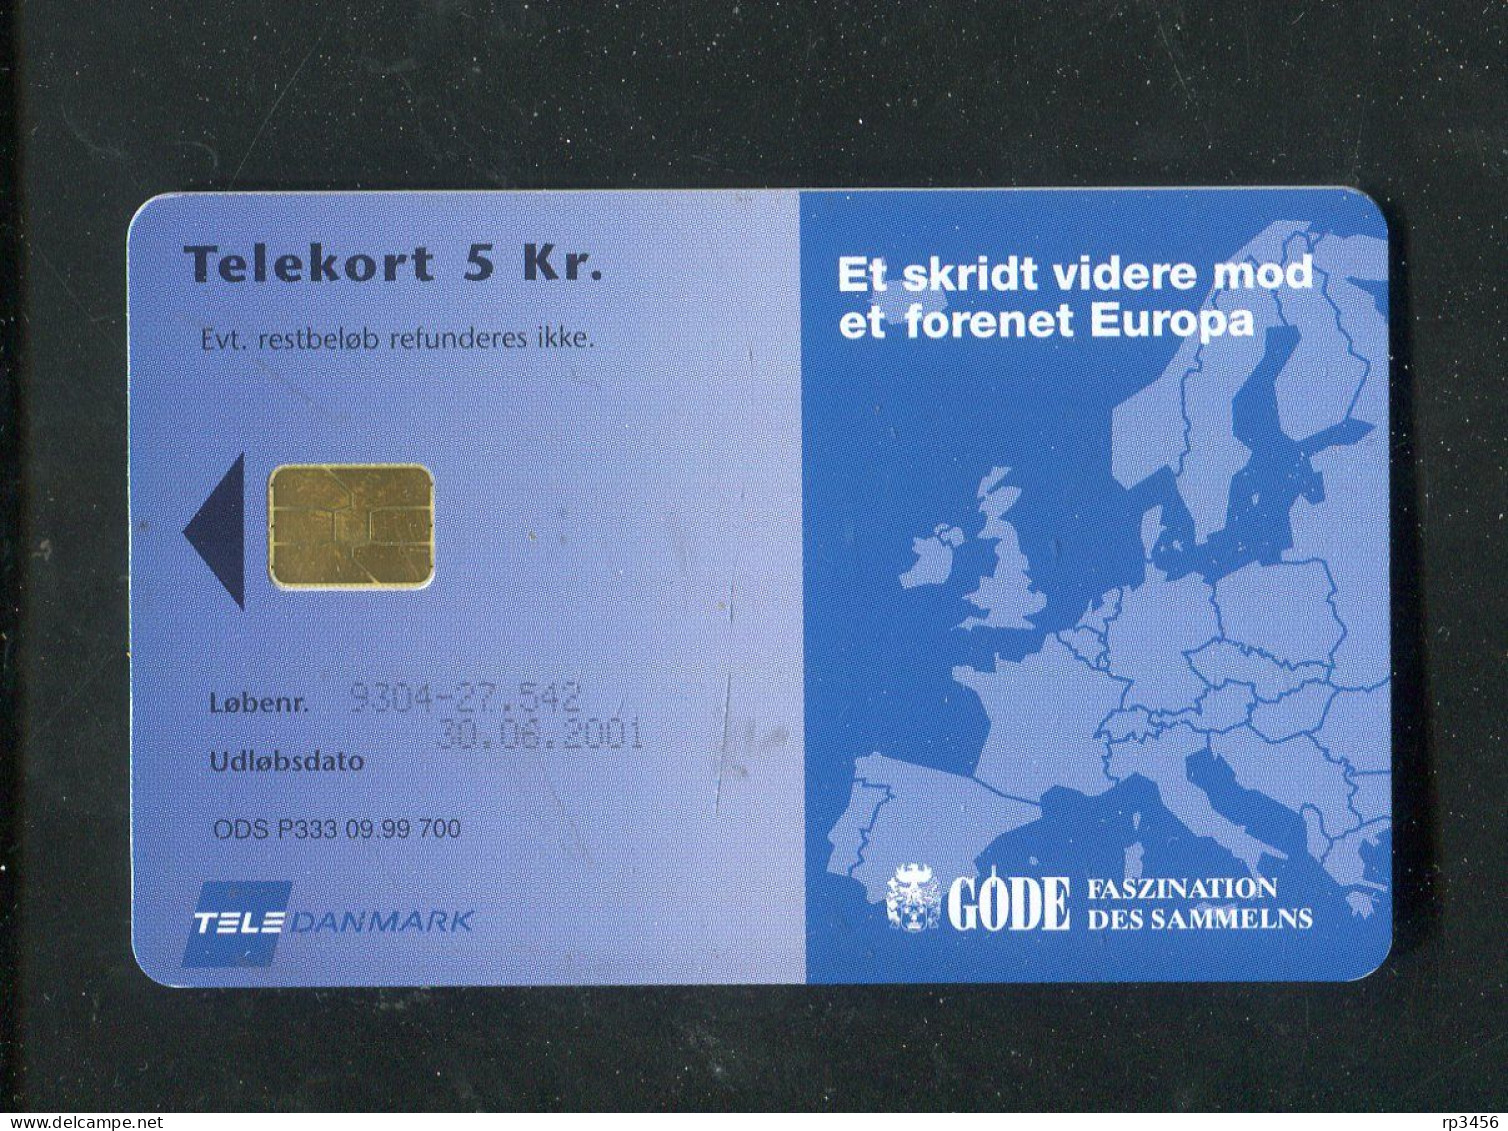 "DAENEMARK" 2001, Telefonkarte "ECU 3" (Oesterreichische Schillinge 13.44" Unbenutzt (R1253) - Denmark